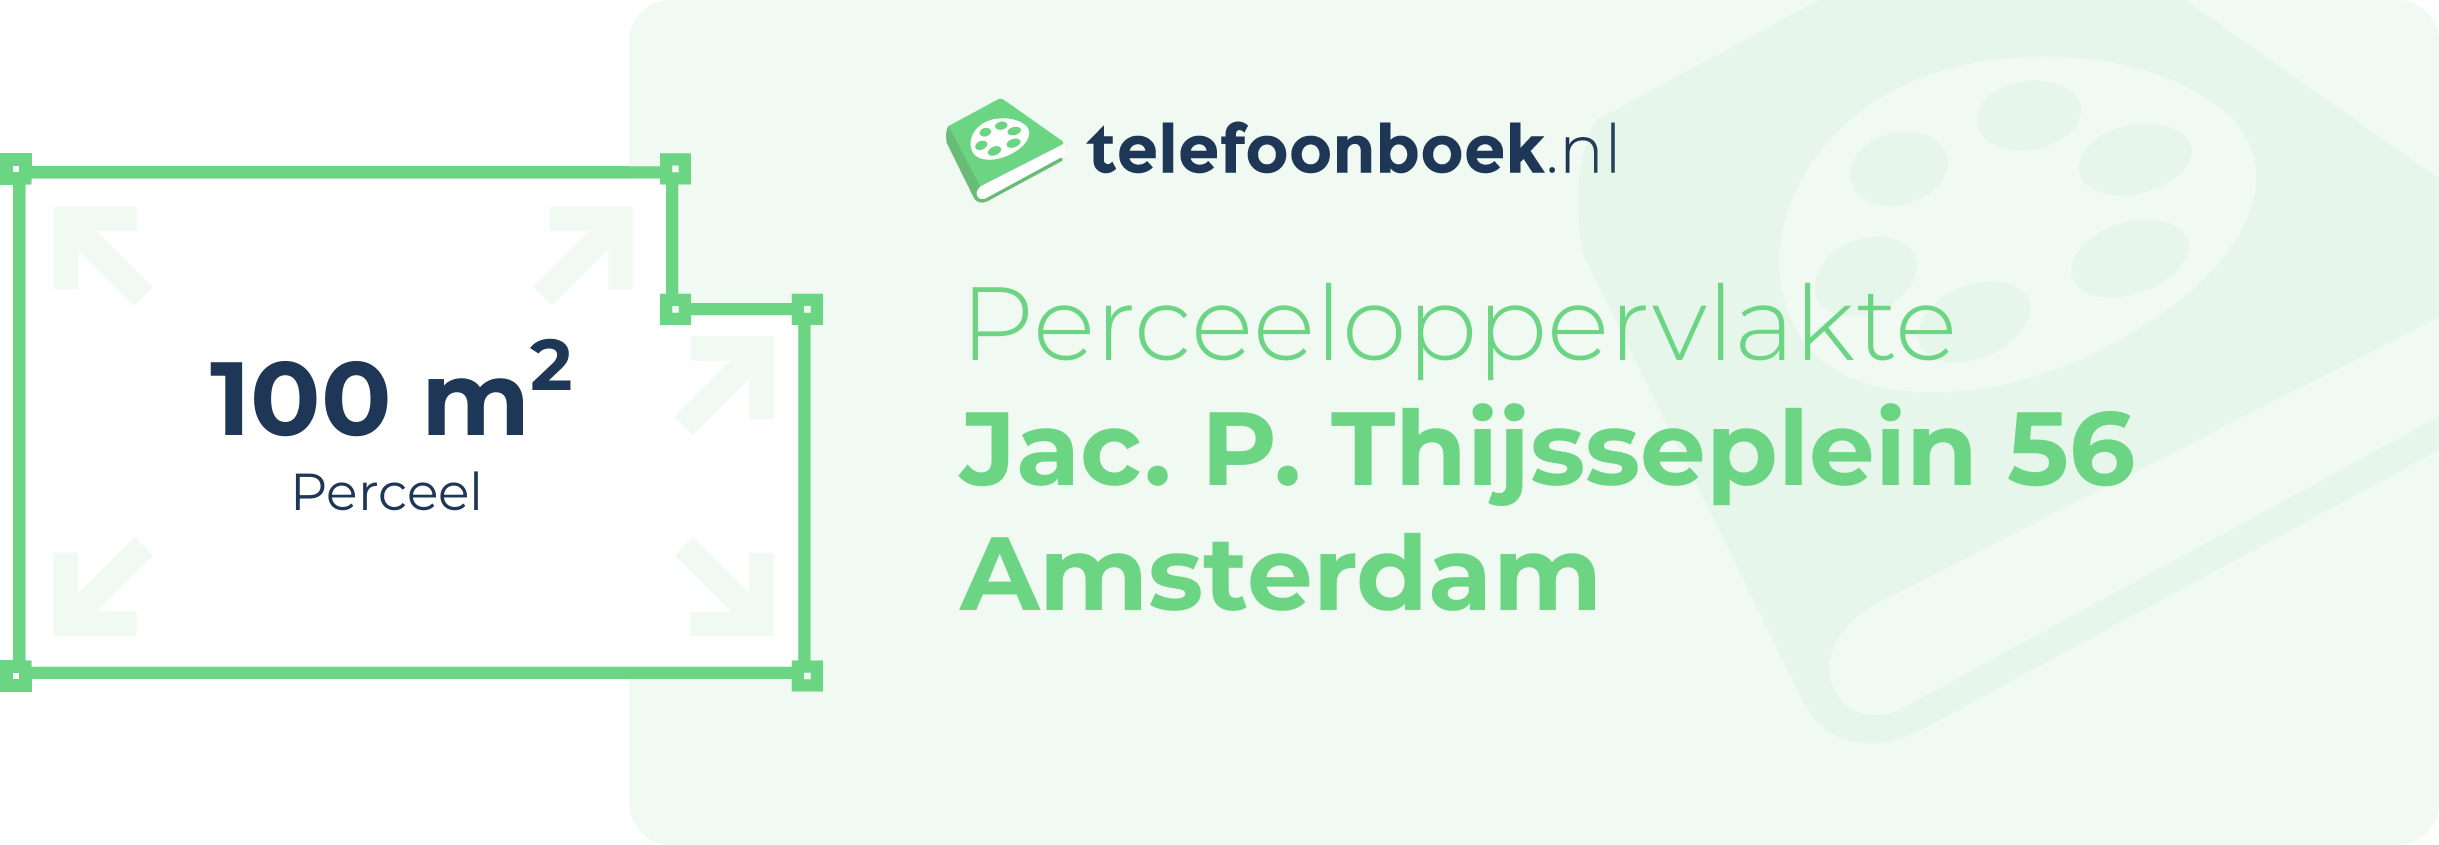 Perceeloppervlakte Jac. P. Thijsseplein 56 Amsterdam